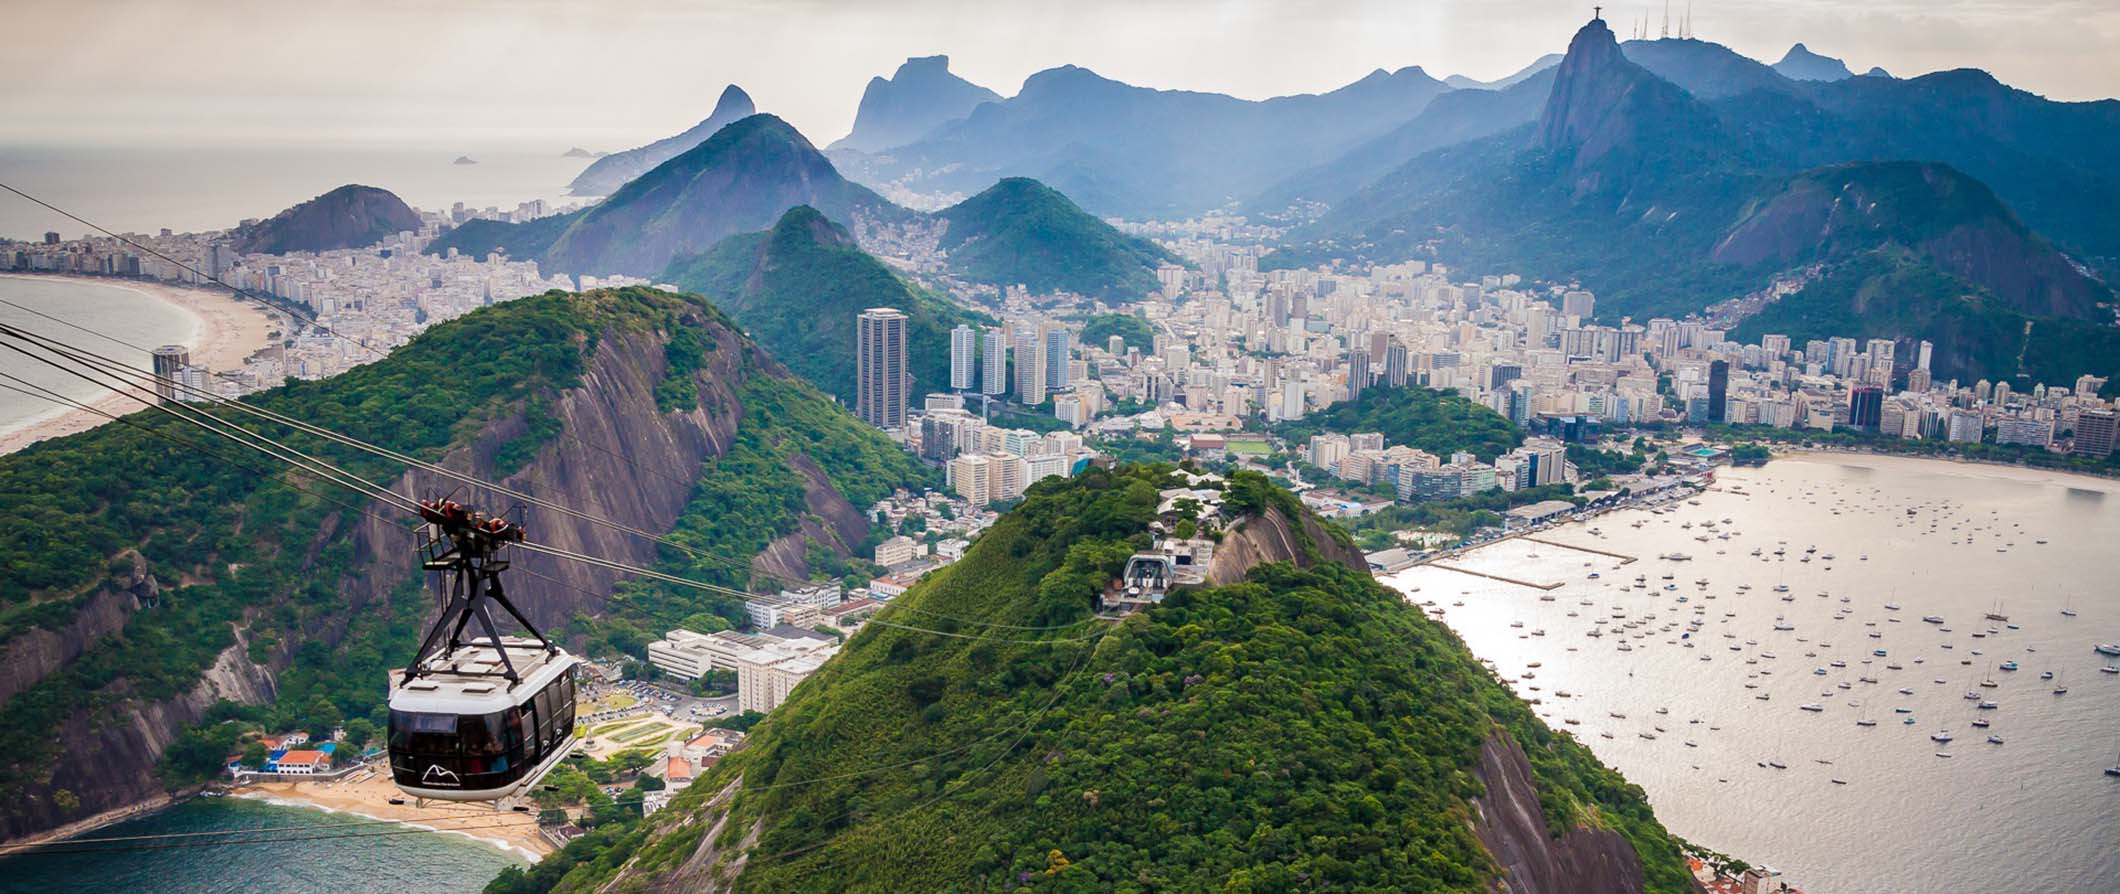 Vista do Rio de Janeiro do Pão de Açúcar com montanhas verdes ao fundo e um teleférico em primeiro plano